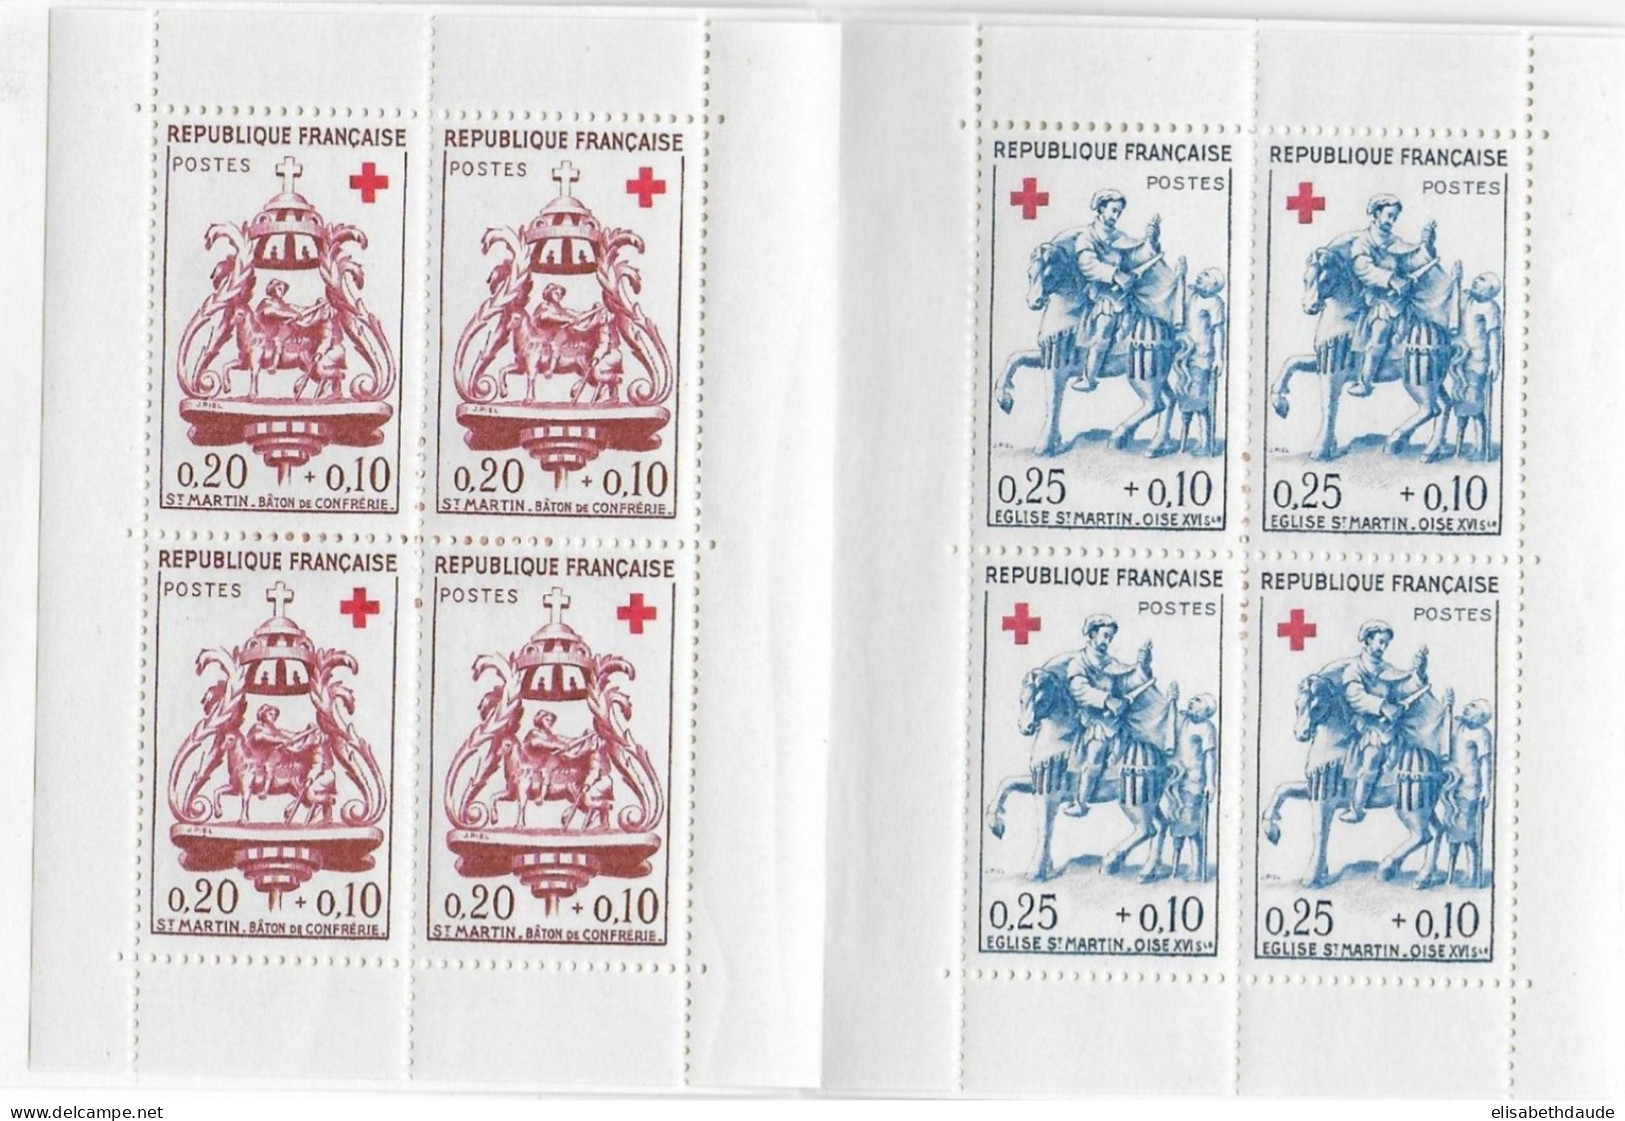 1960 - CARNET CROIX-ROUGE - RED CROSS - COTE = 56 EUR - Rode Kruis